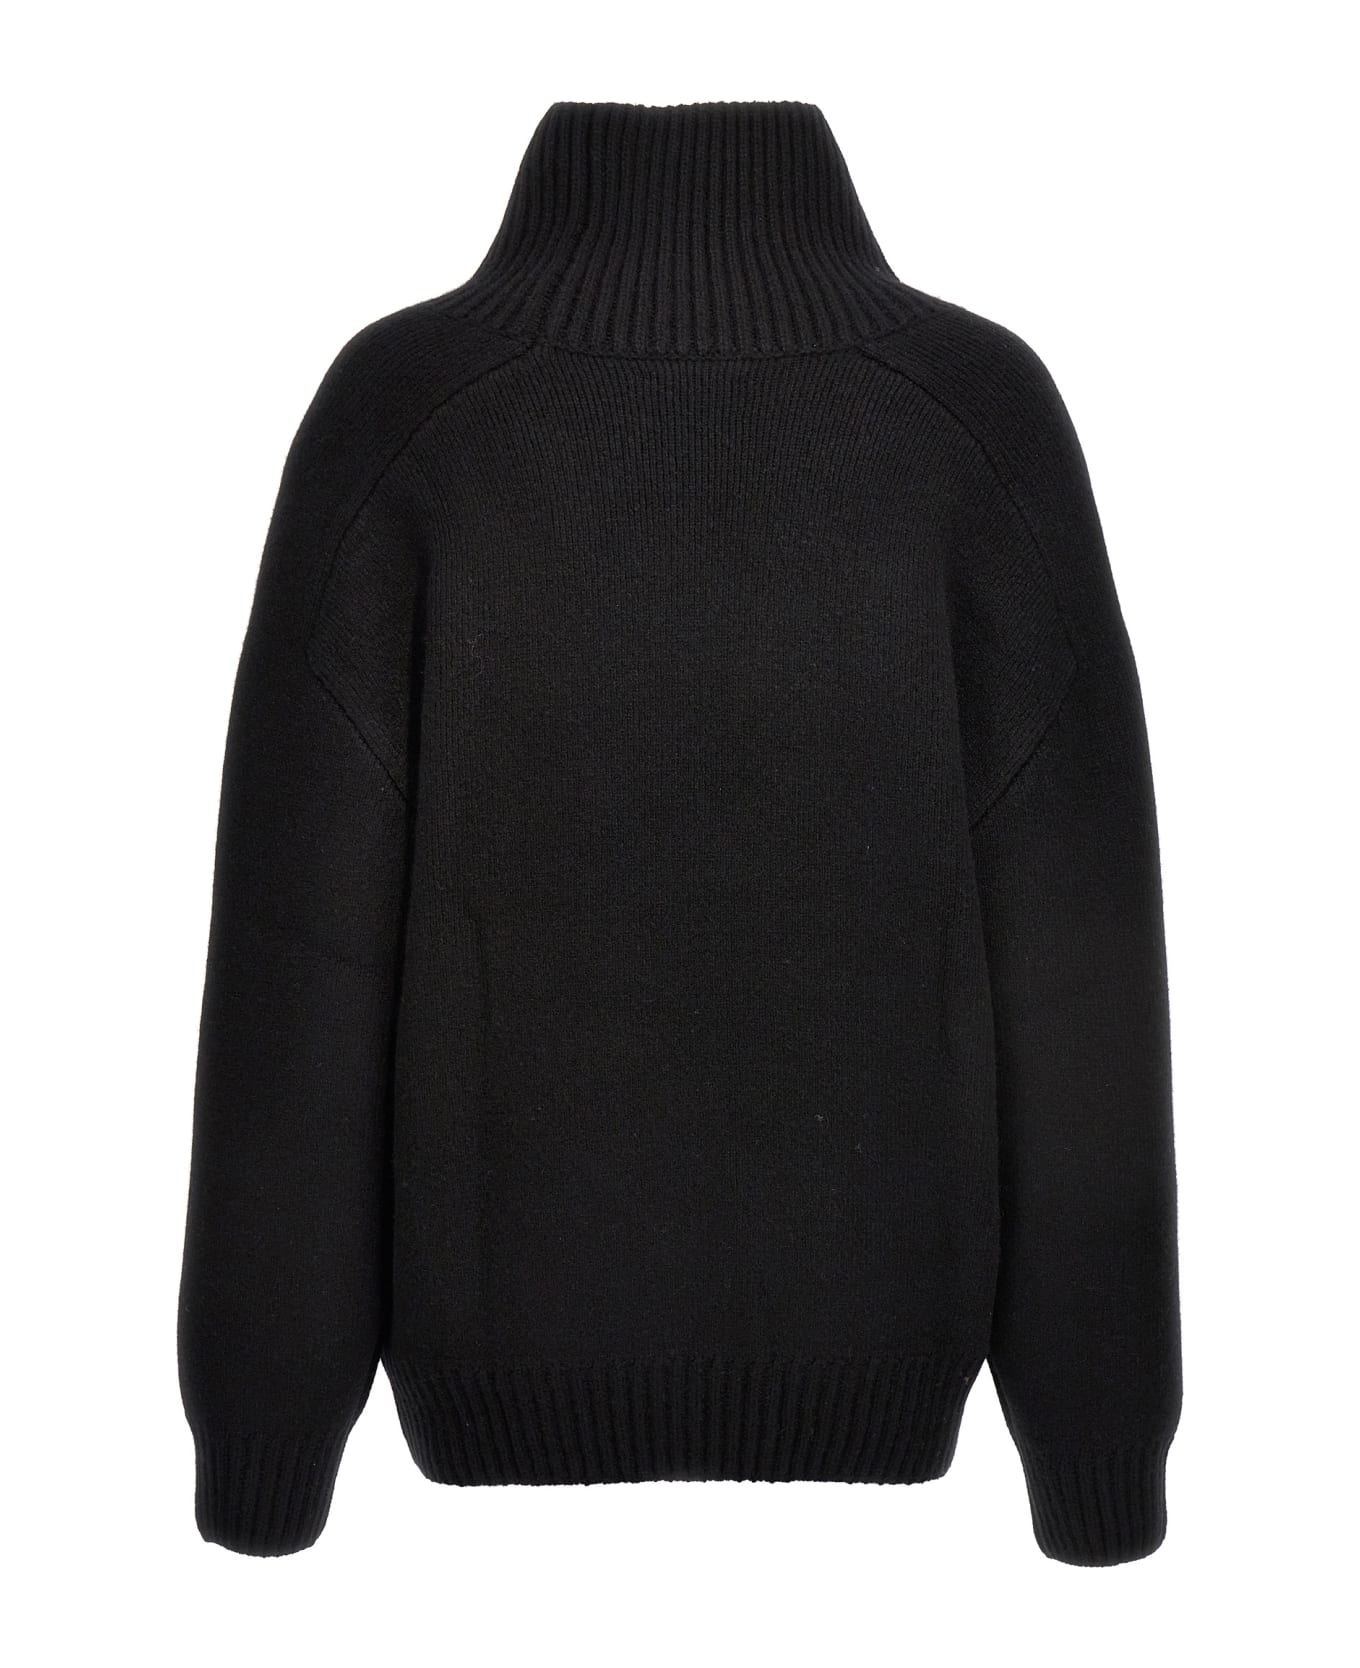 Khaite 'landen' Sweater - Black